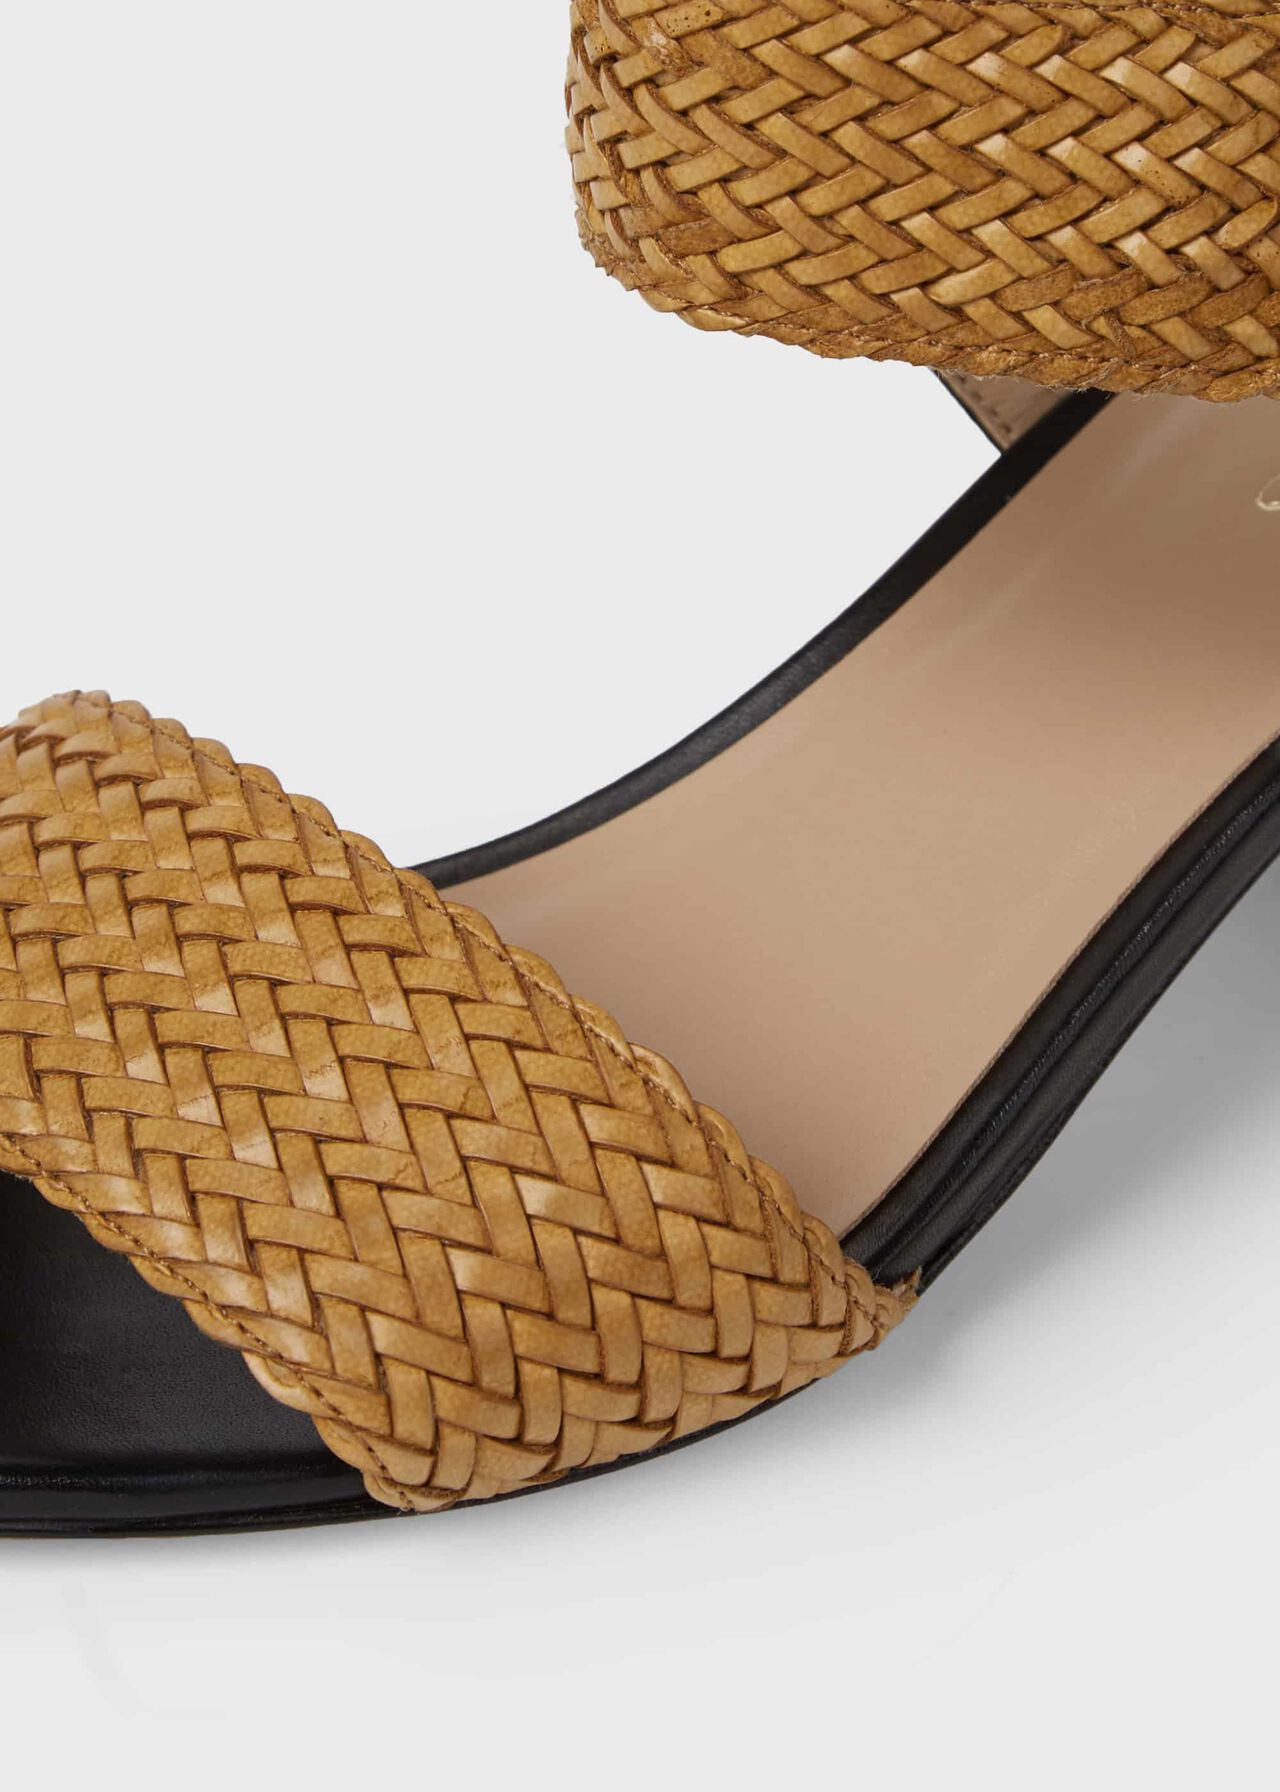 Lois Leather Sandals, Tan, hi-res